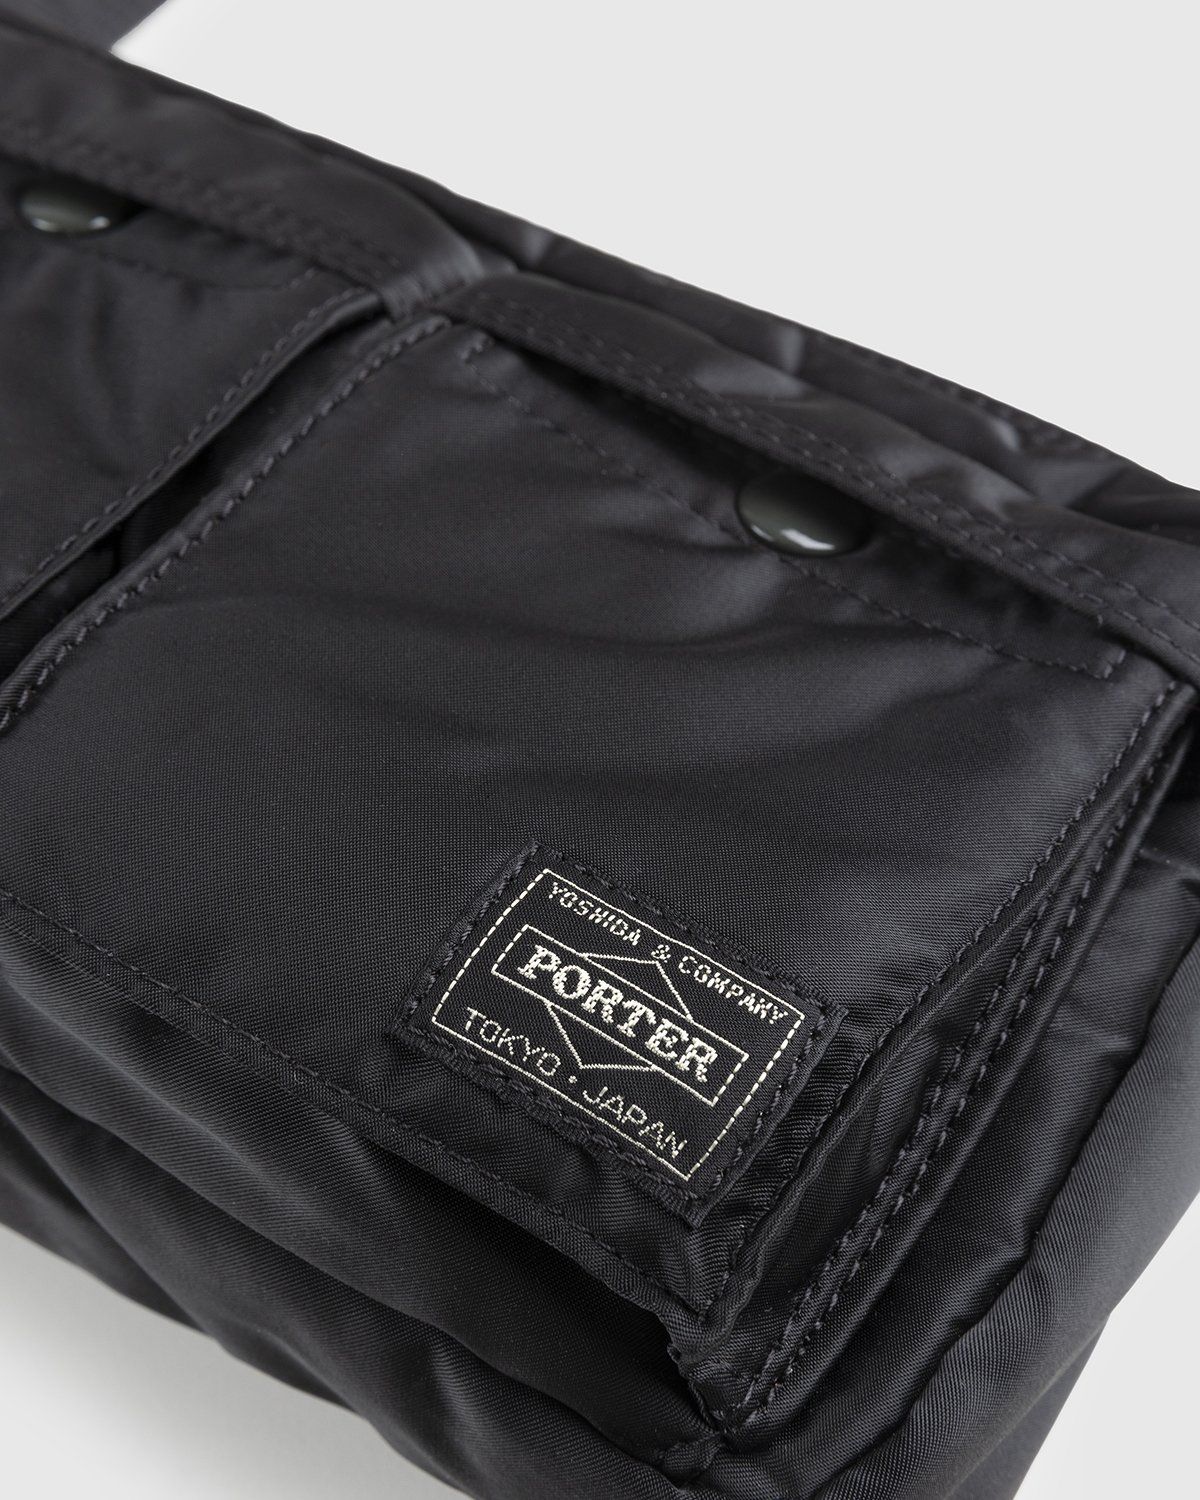 Porter-Yoshida & Co. – Tanker Shoulder Bag Black - Bags - Black - Image 6